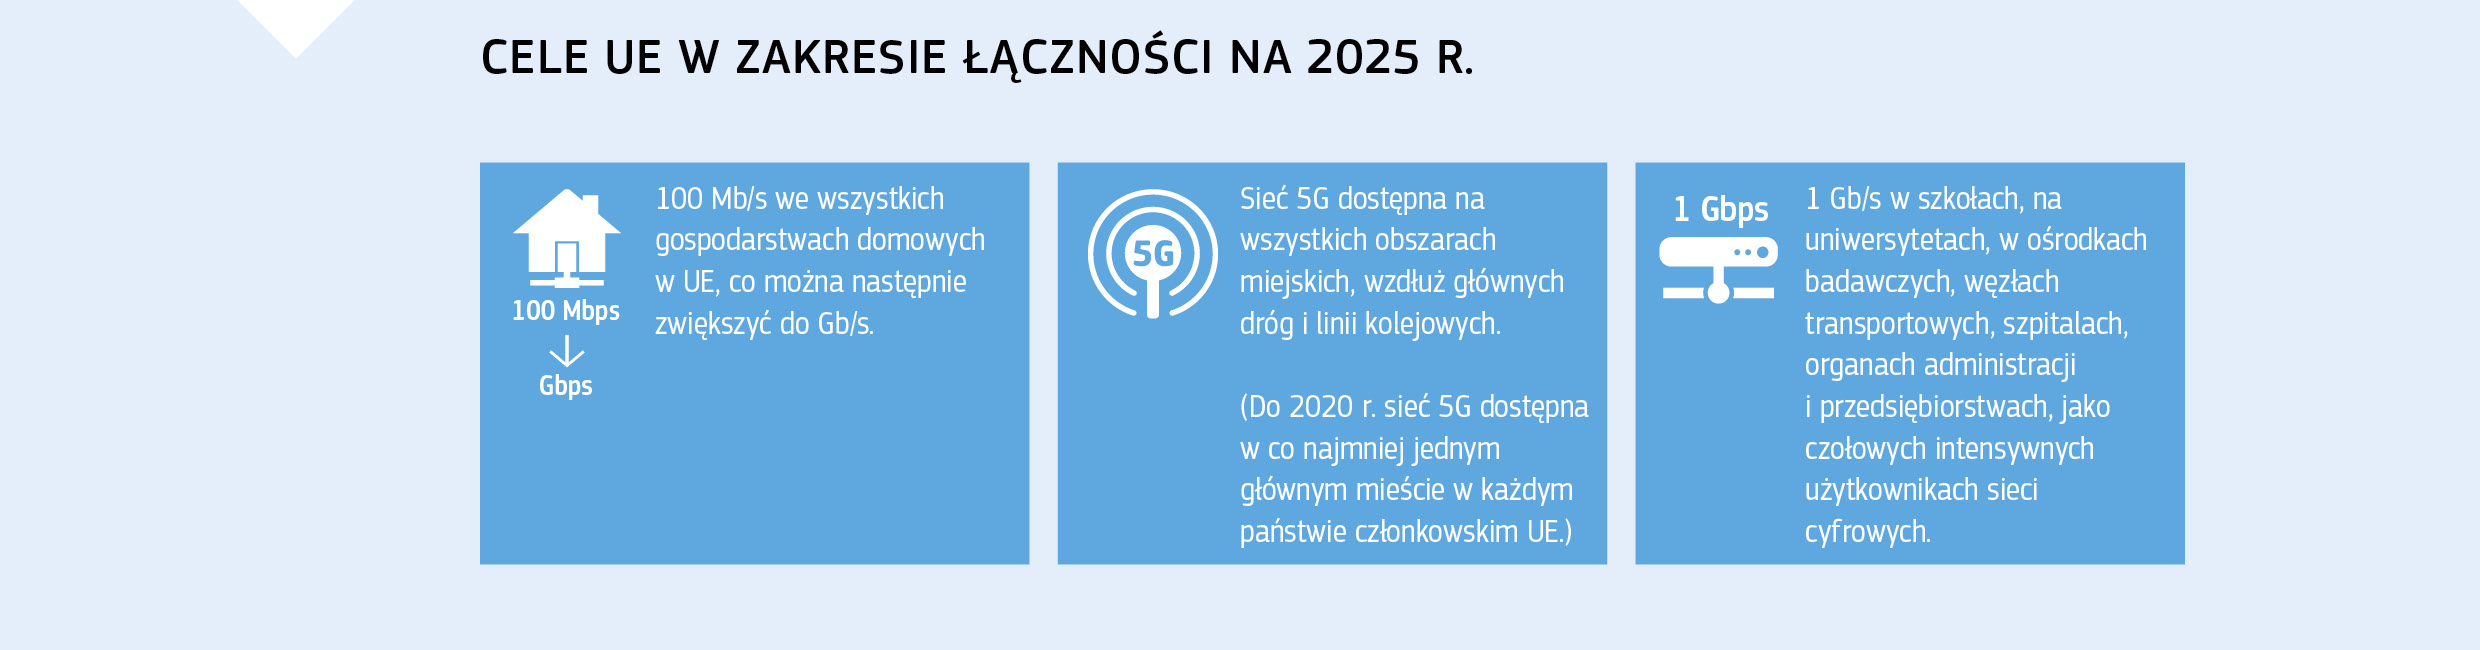 CELE UE W ZAKRESIE ŁĄCZNOŚCI NA 2025 R.